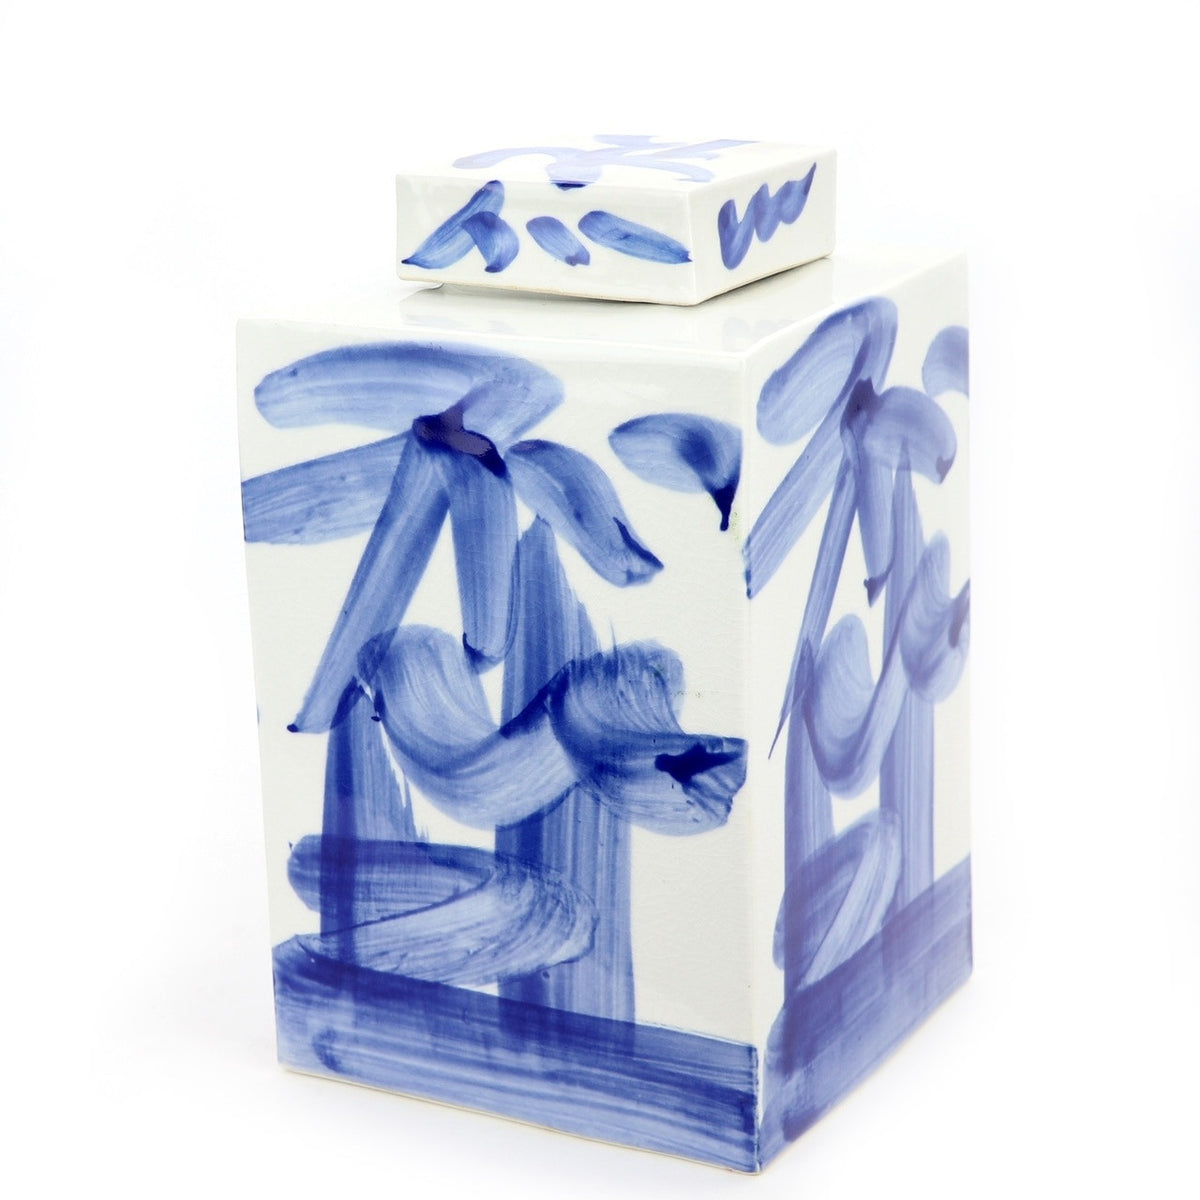 Square tea jar in blue and white brushstroke